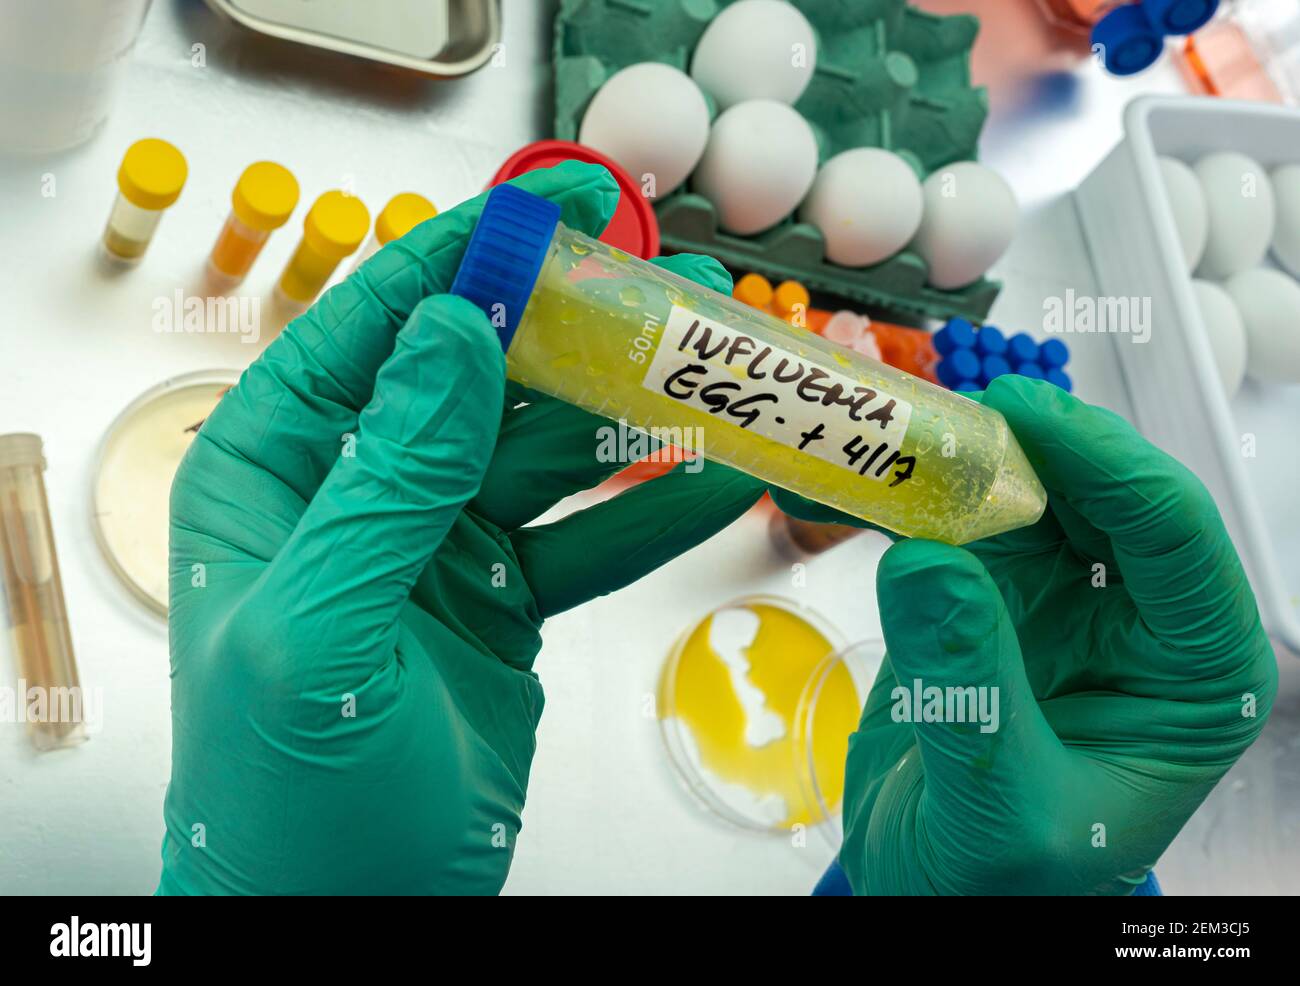 Campionamento scientifico di uova in cattive condizioni, analisi dell'influenza aviaria nell'uomo, immagine concettuale Foto Stock